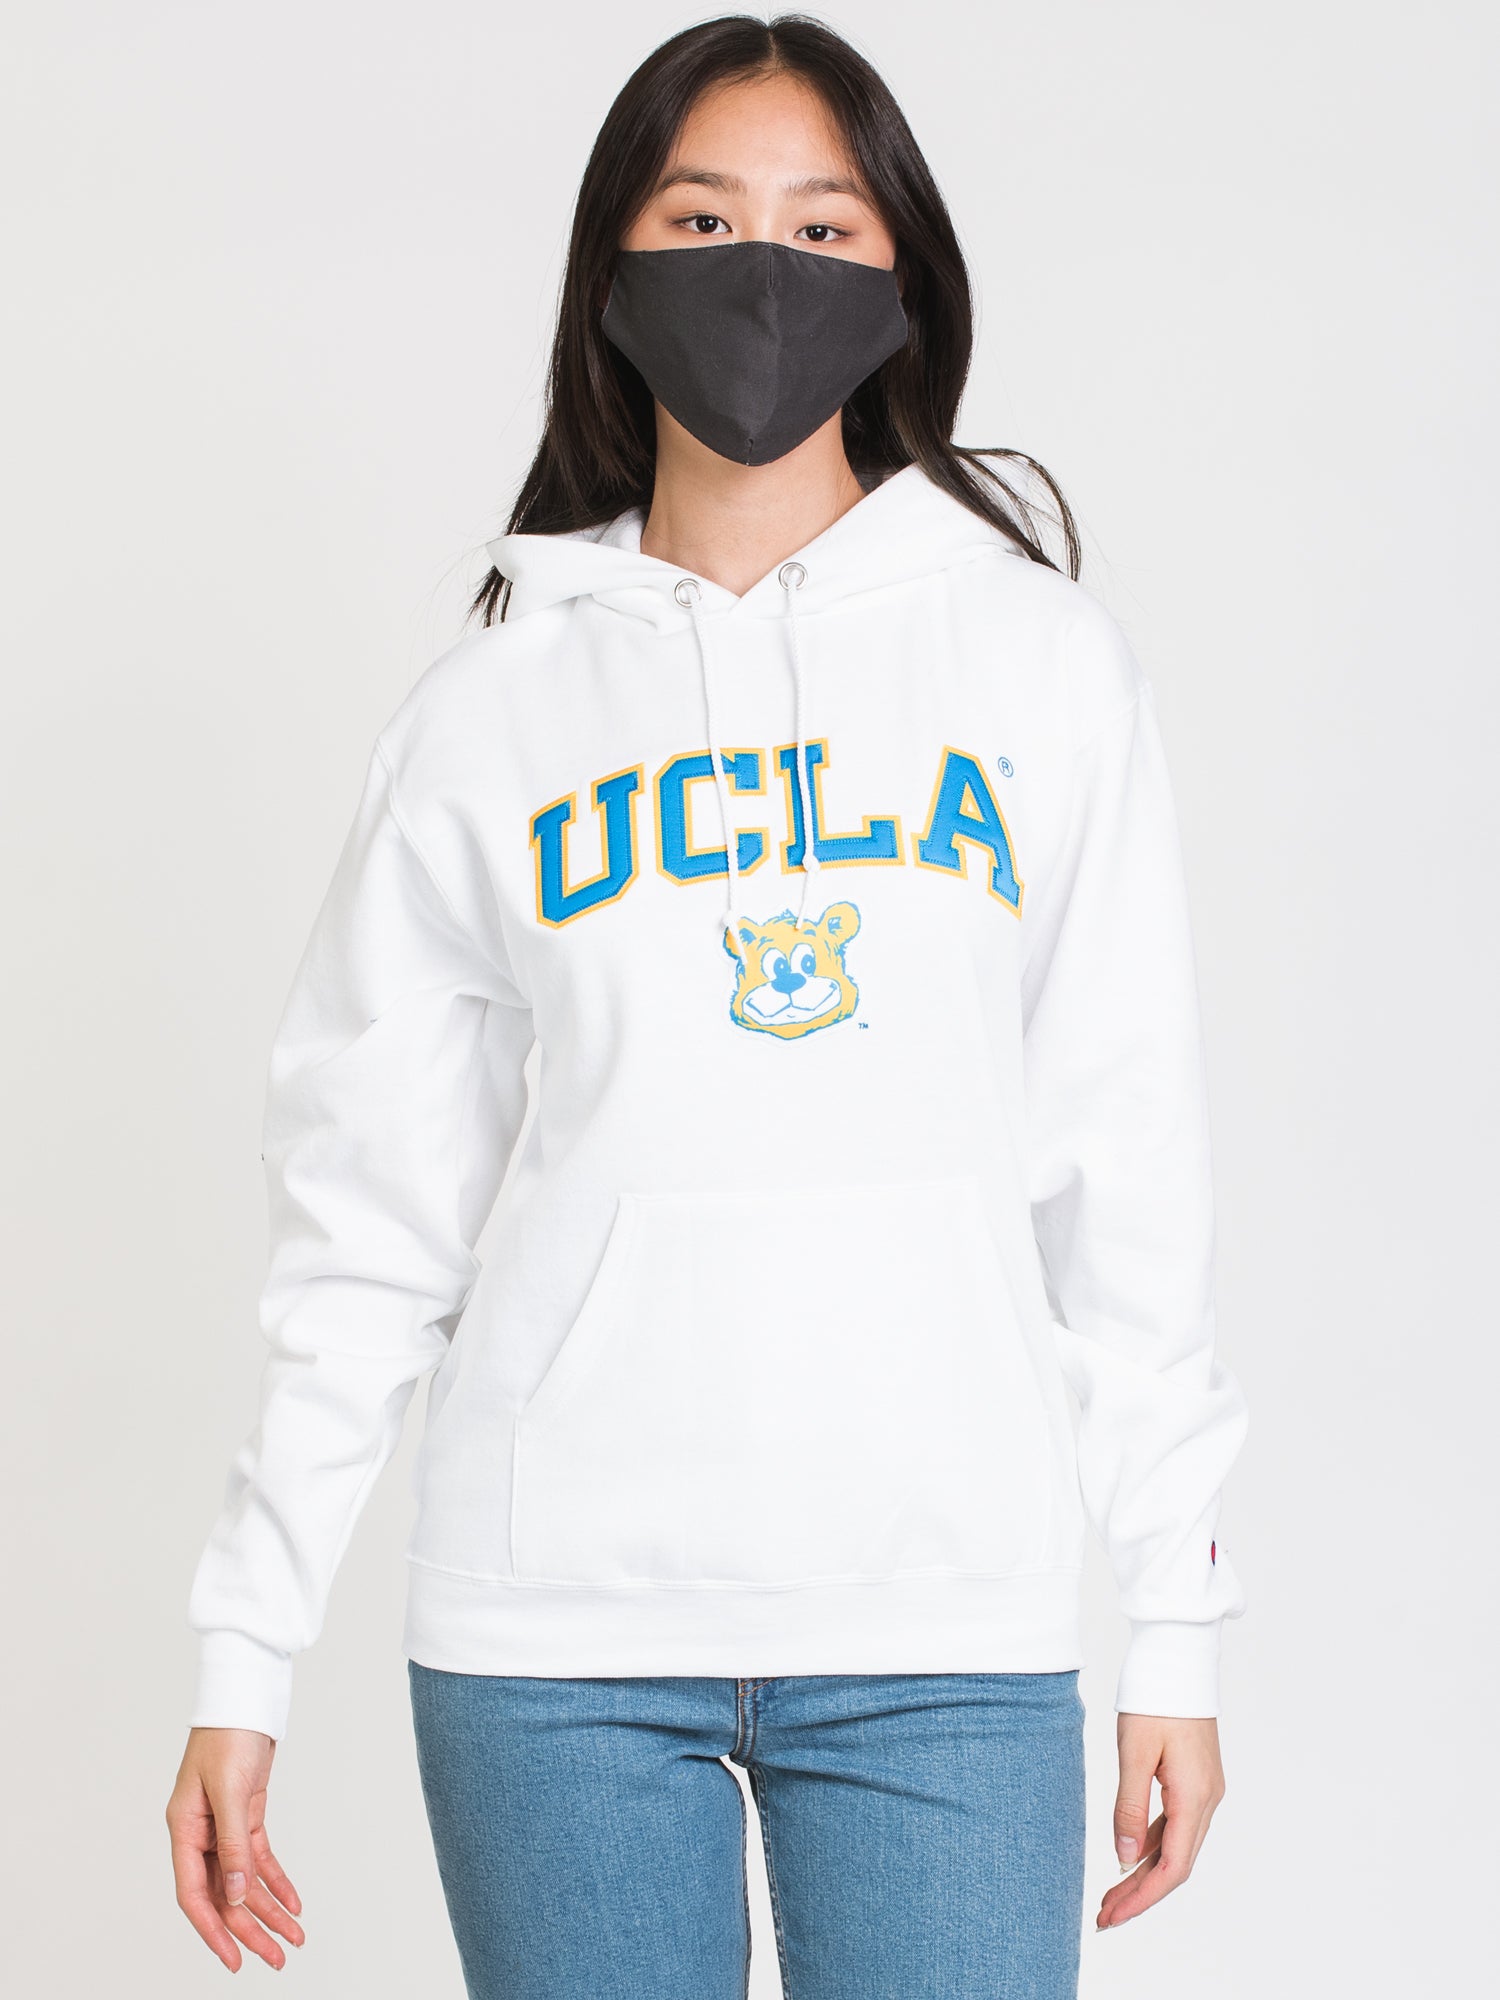 UCLA - スウェット